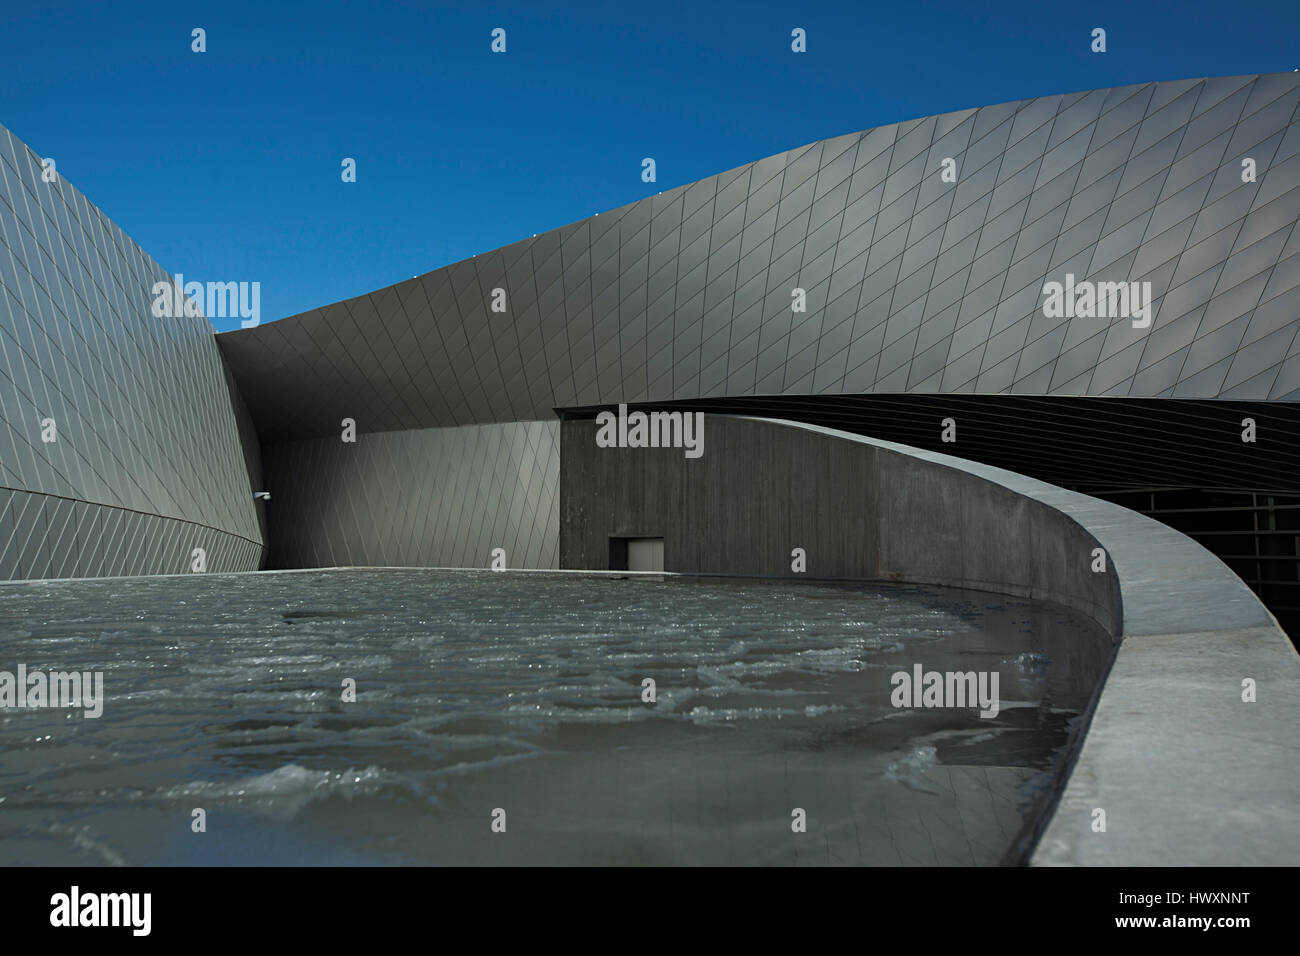 Aquarium du Danemark, également connu sous le nom de la planète bleue (Den Blå Planet) et a ouvert ses portes à l'extérieur de Copenhague Kastrup en 2013. Le top-moderne buildi Banque D'Images